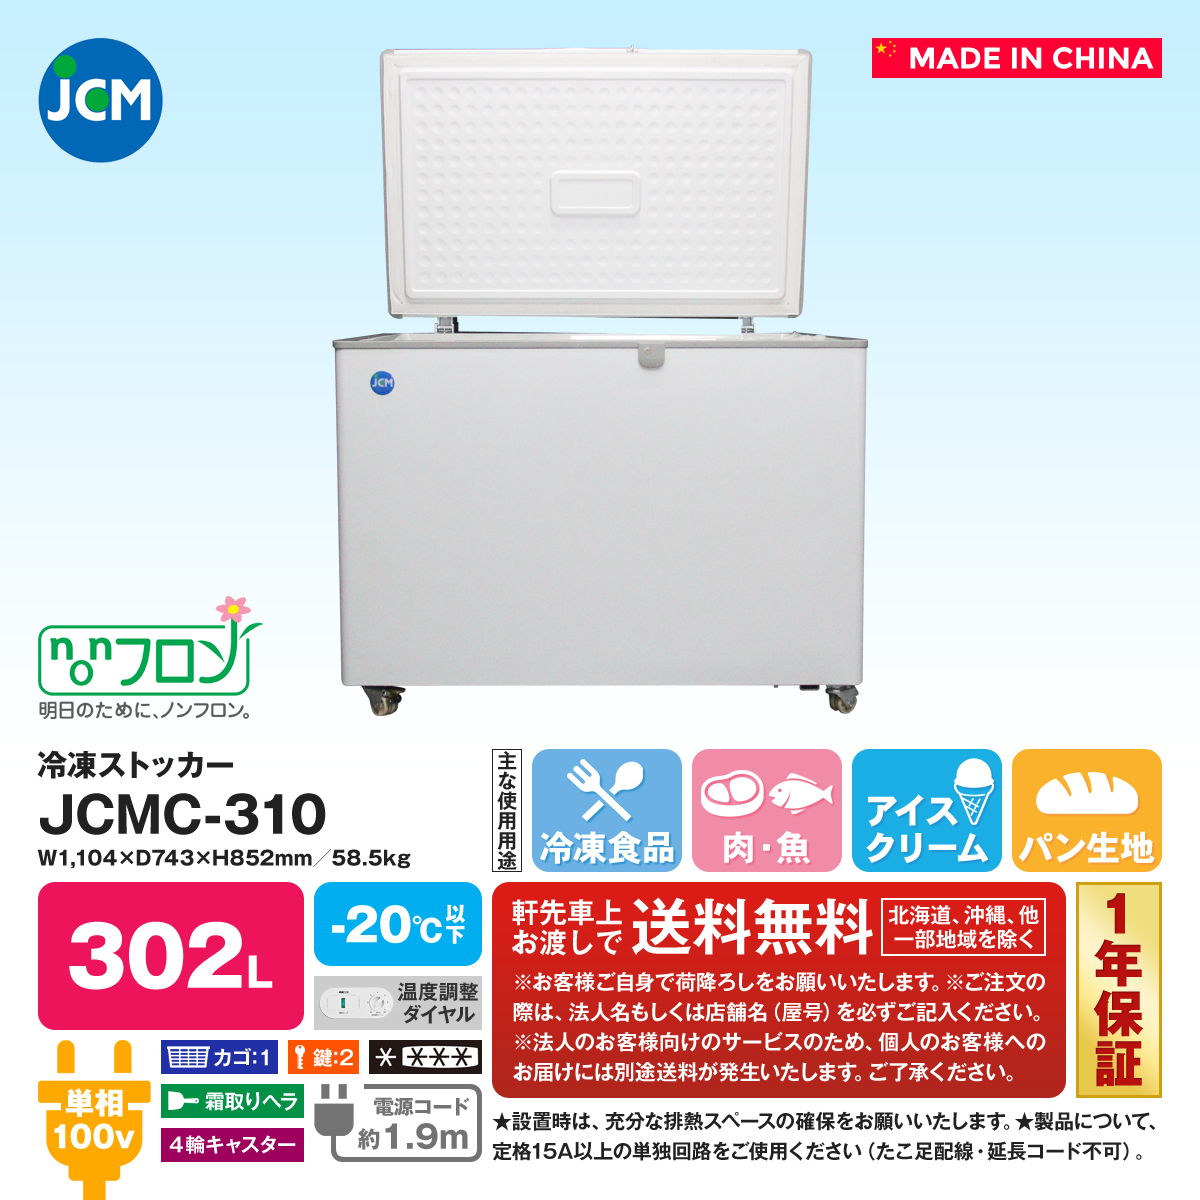 見事な 清風堂東京本店冷凍ストッカー JCMC-310